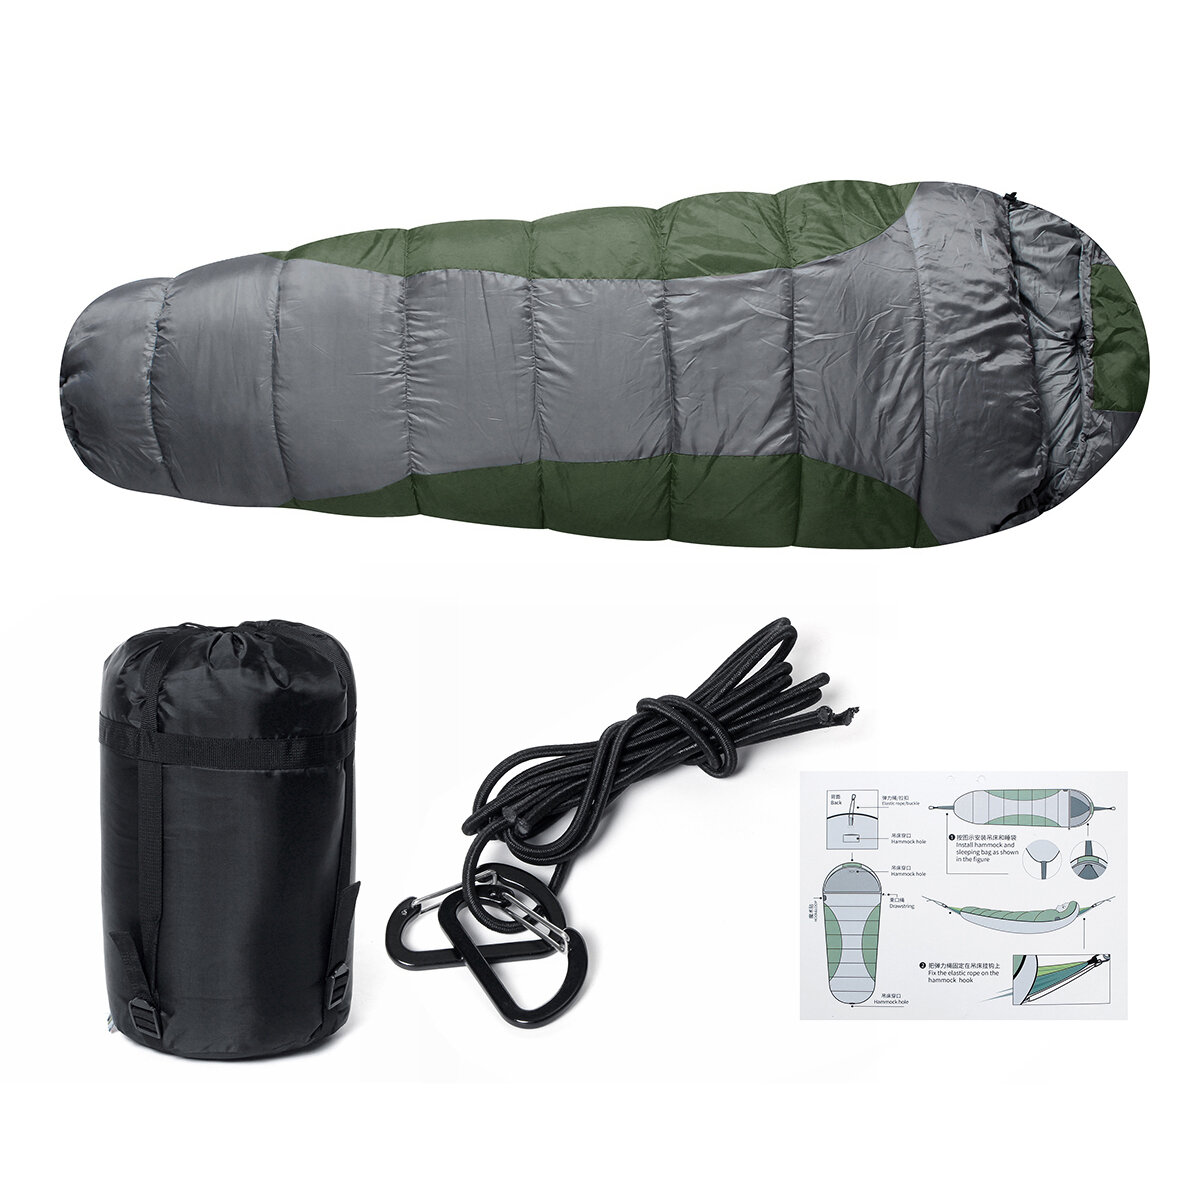 Sac de couchage individuel en polyester imperméable 210T de 230x50cm pour le camping et les voyages en plein air.